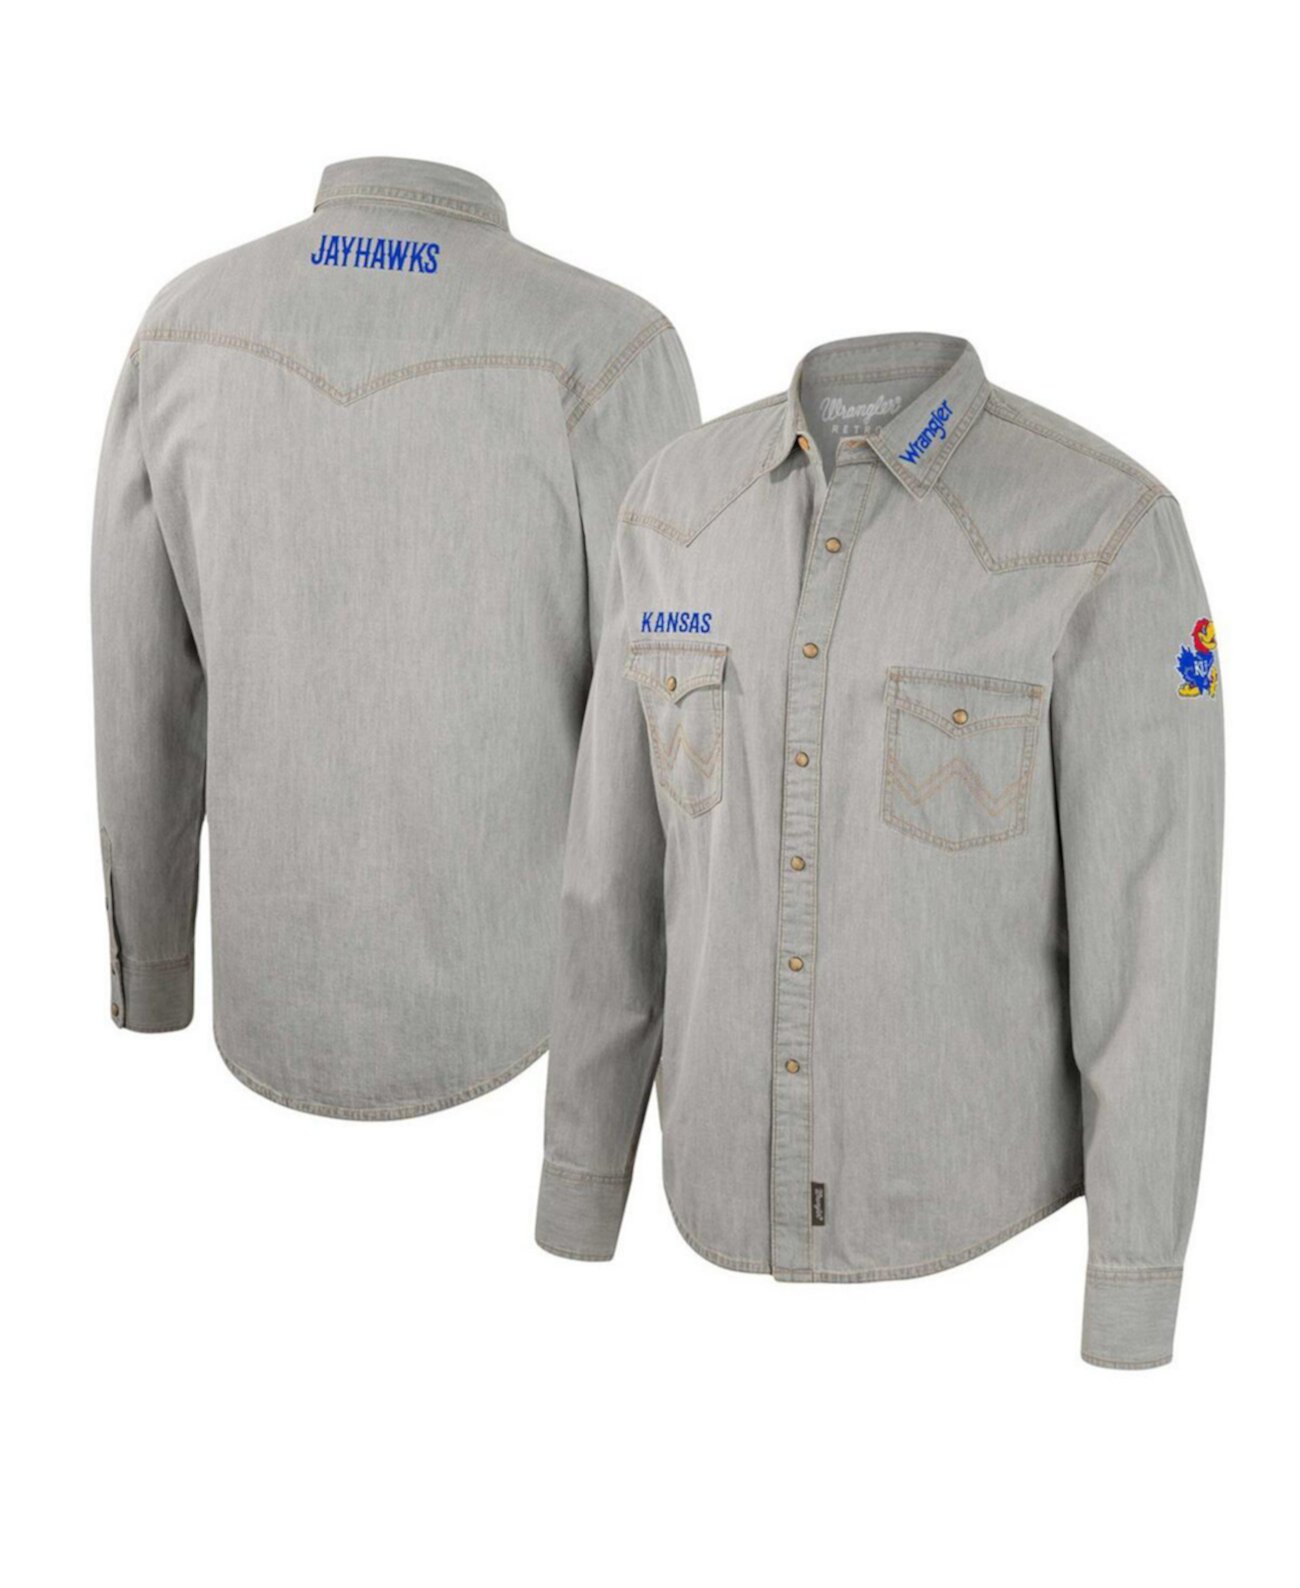 Мужская рубашка в ковбойском стиле с длинными рукавами и застежкой на пуговицы в стиле вестерн x Wrangler Grey Kansas Jayhawks Colosseum